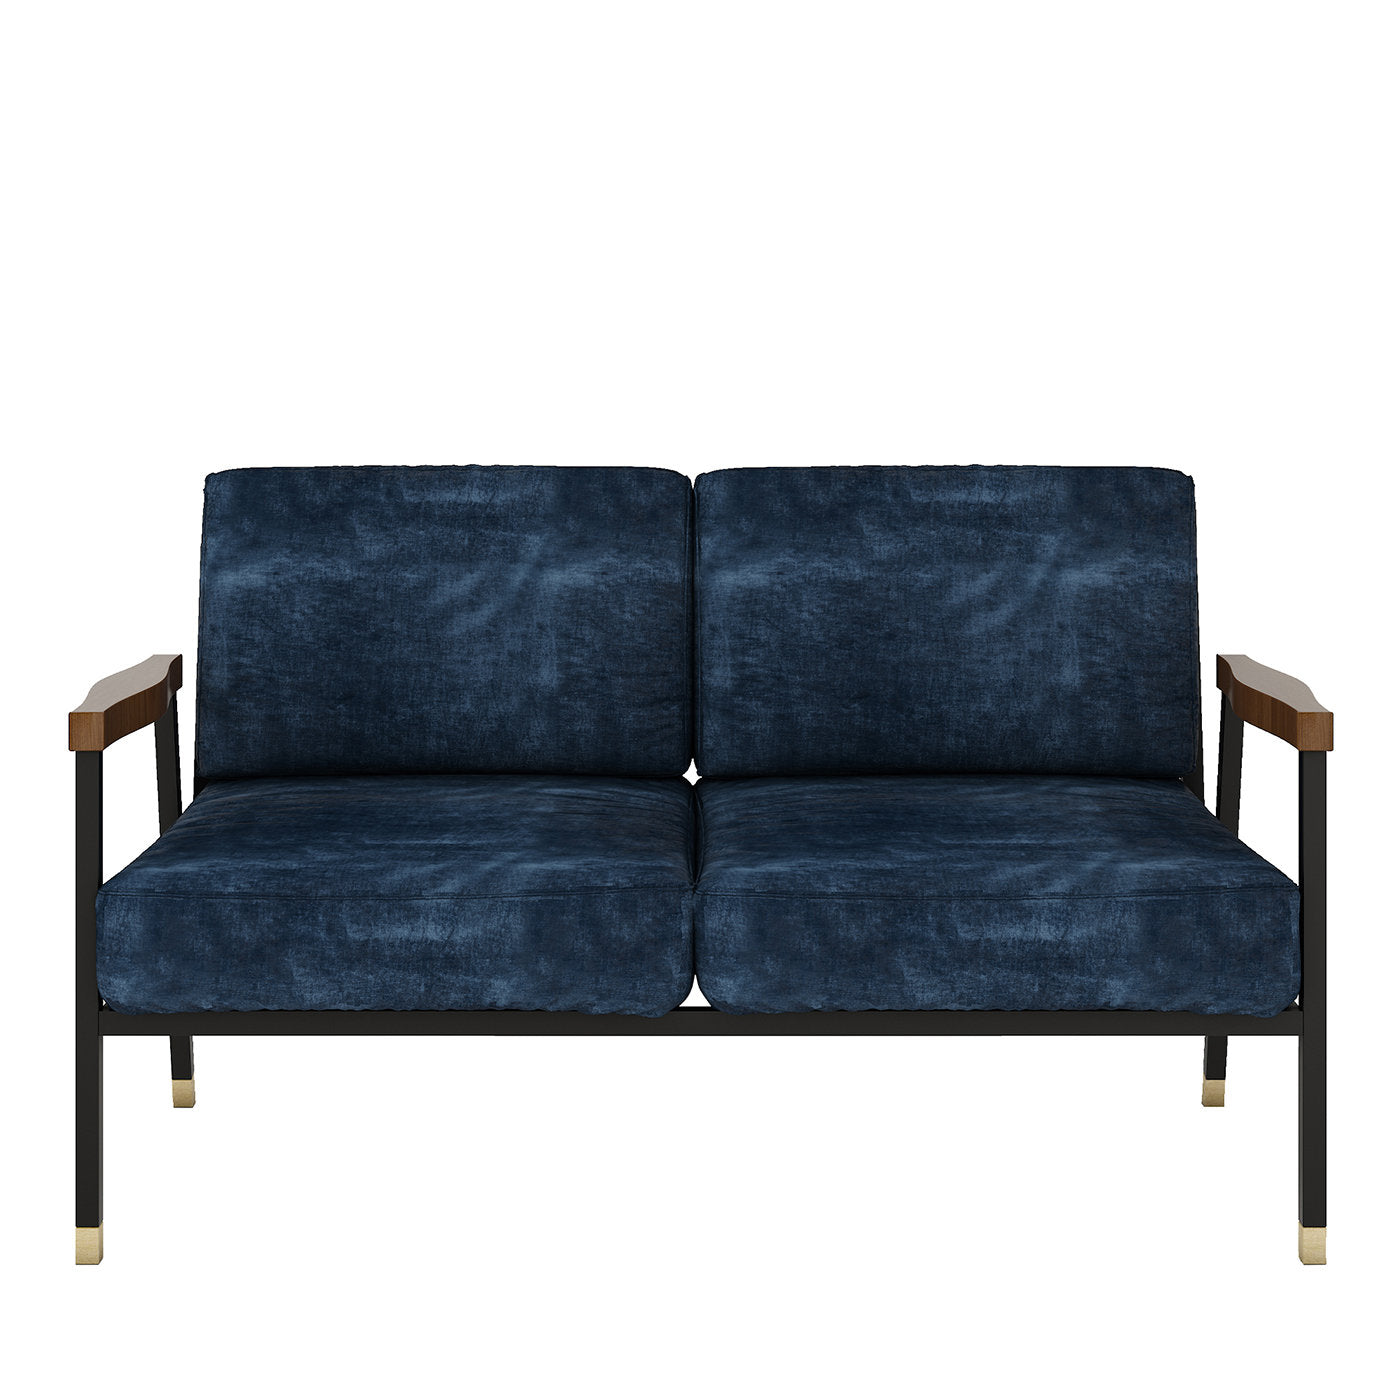 2-Seater Blue Velvet Sofa - Main view